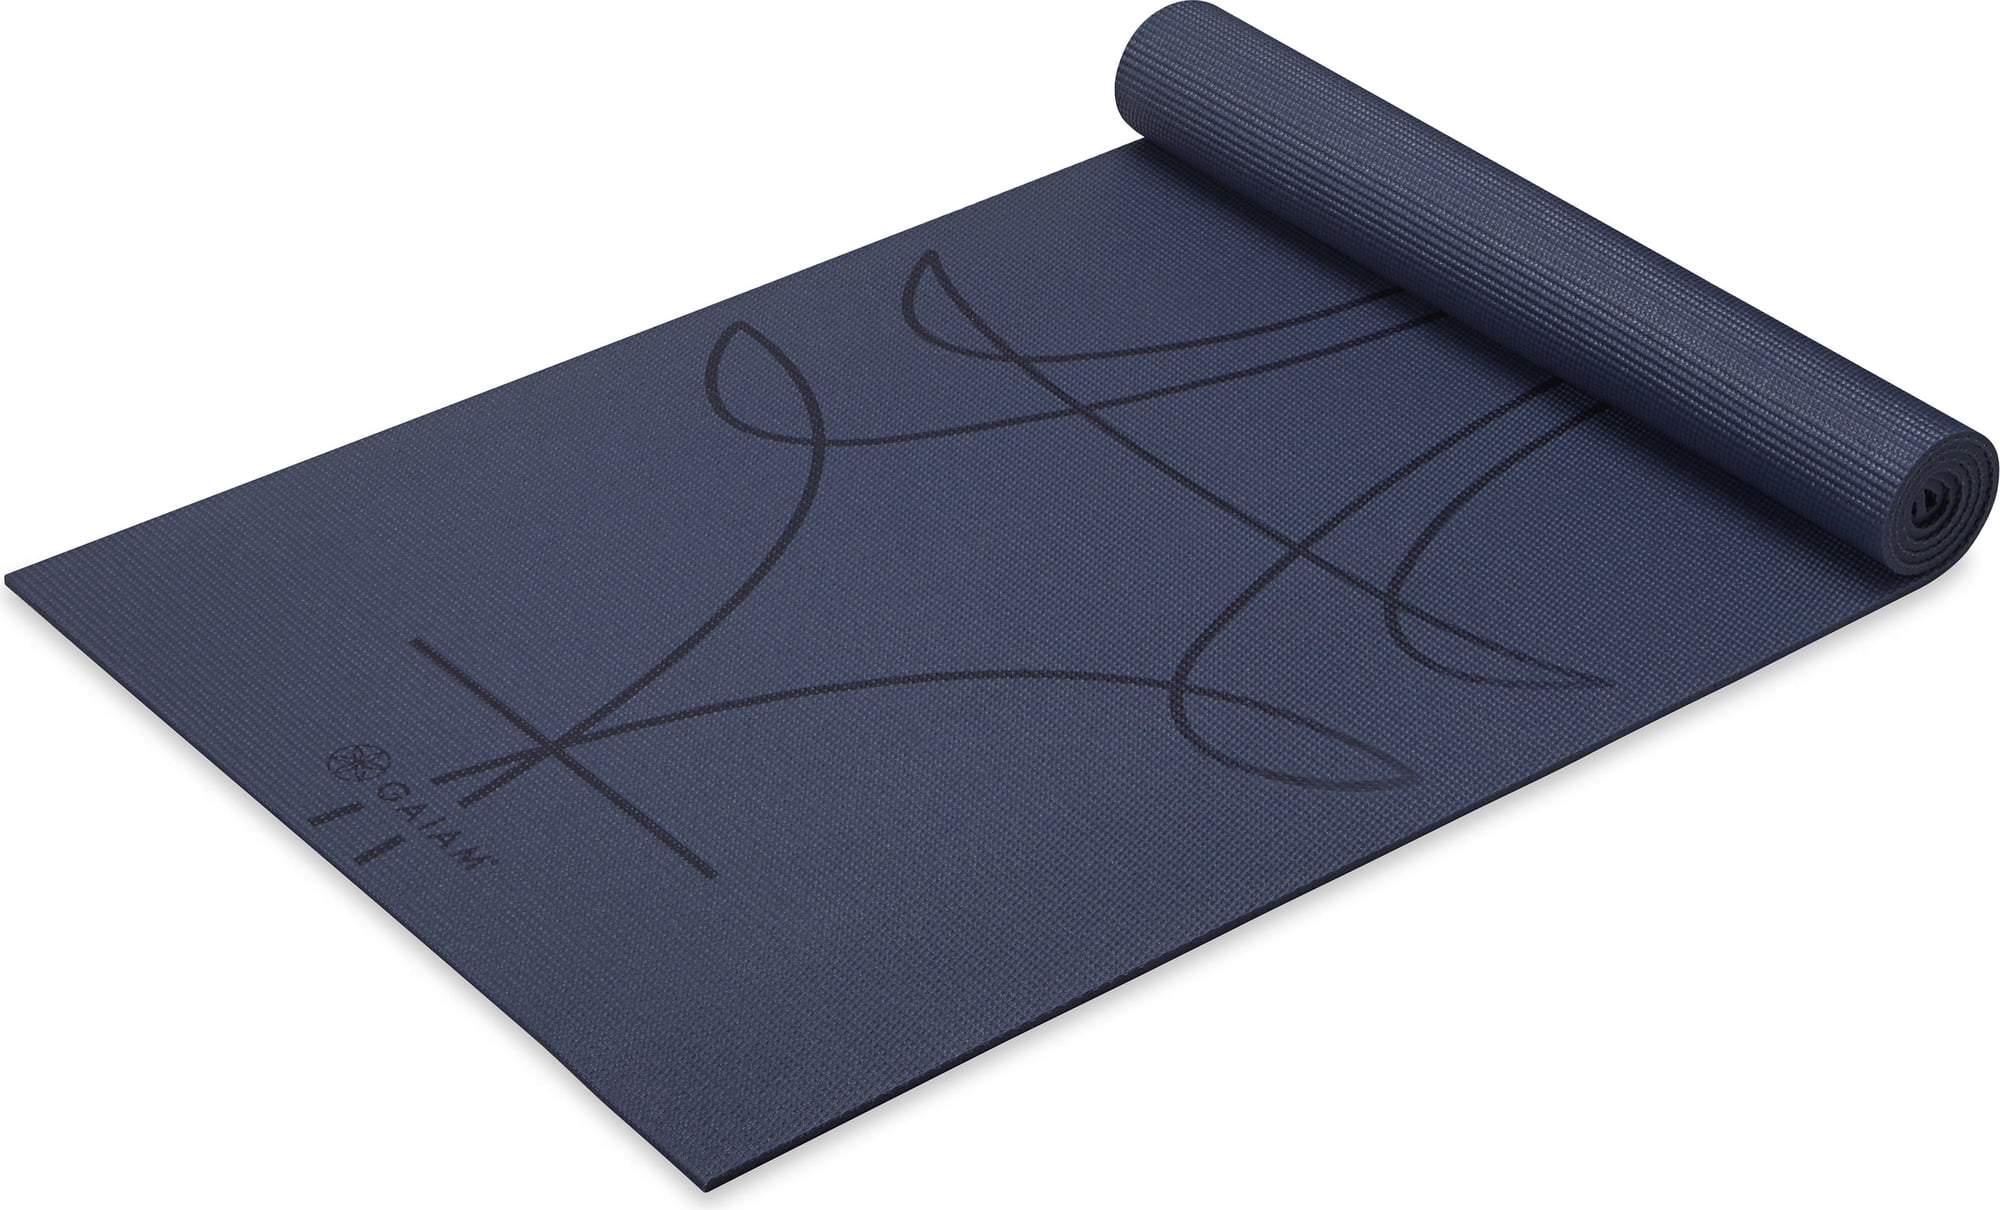 Buy Gaiam Niagara Premium Yoga Mat online